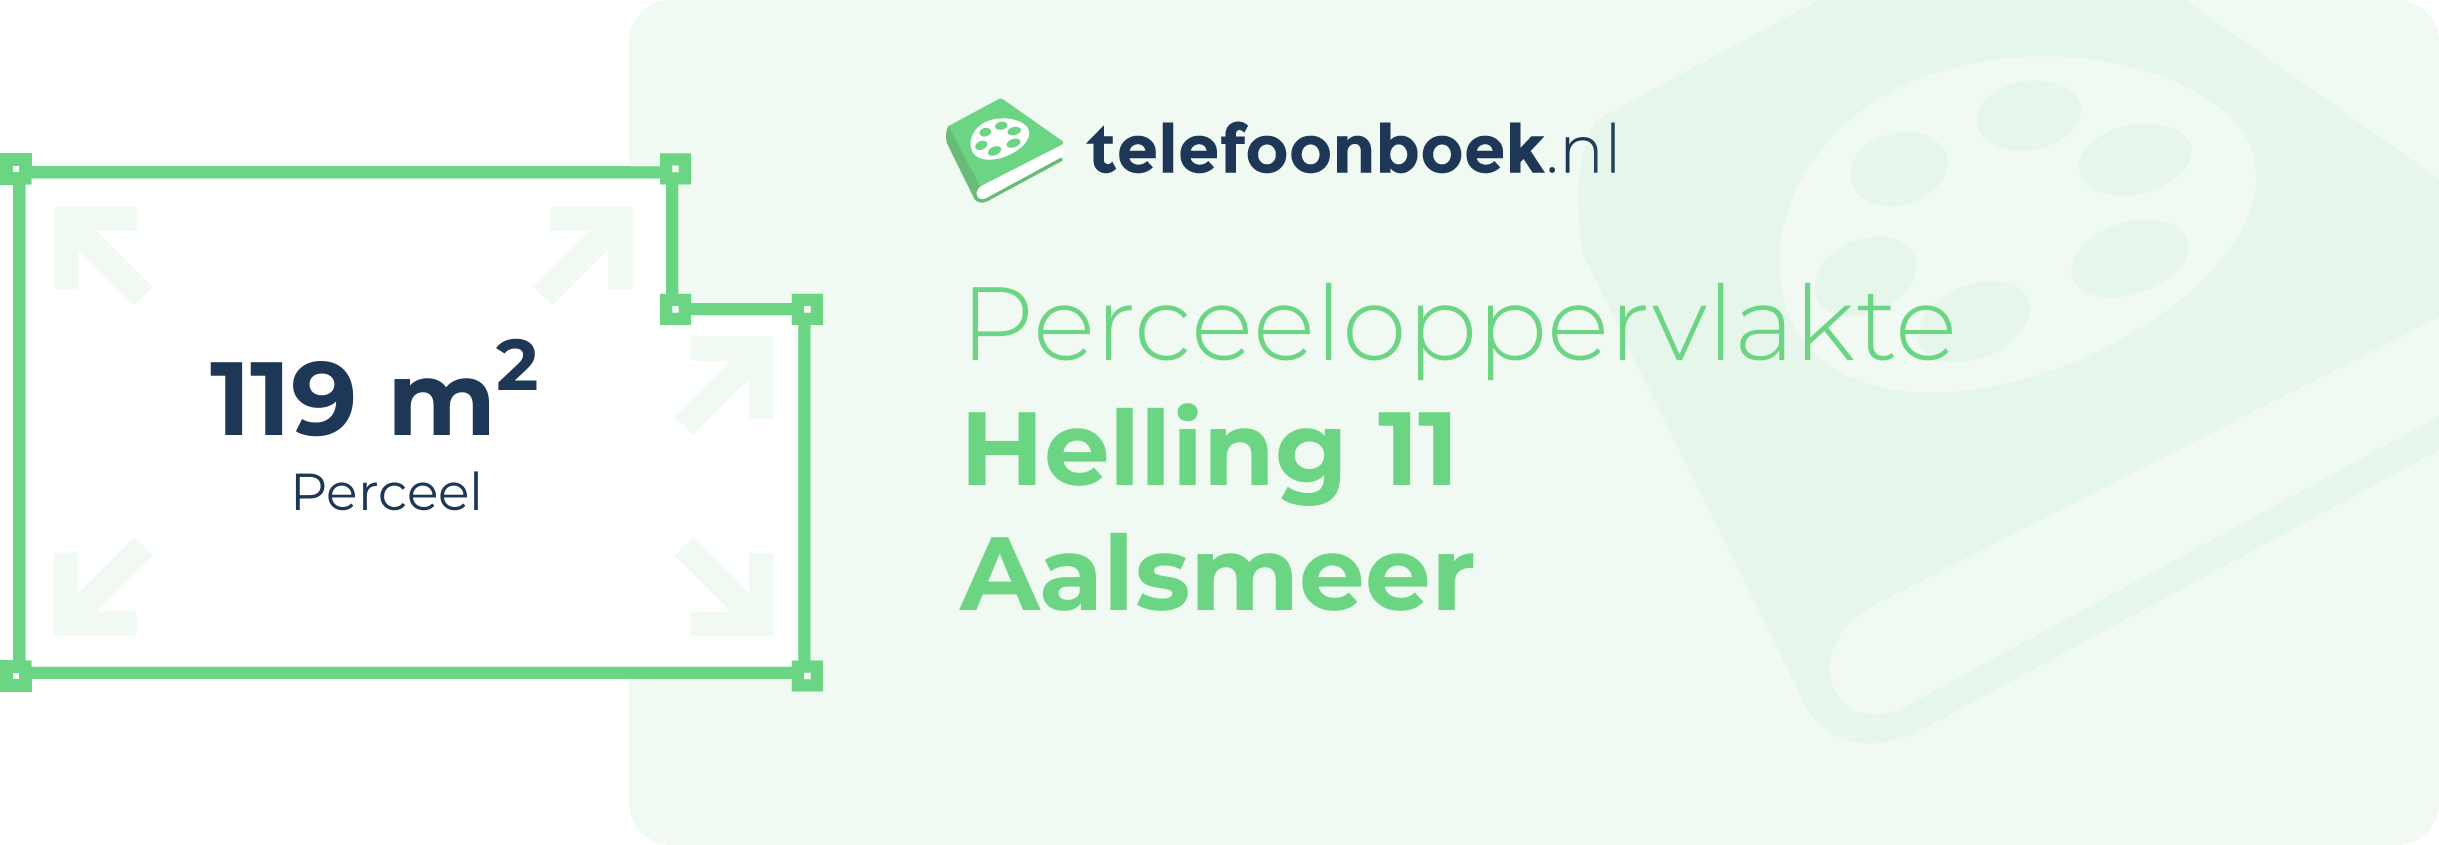 Perceeloppervlakte Helling 11 Aalsmeer